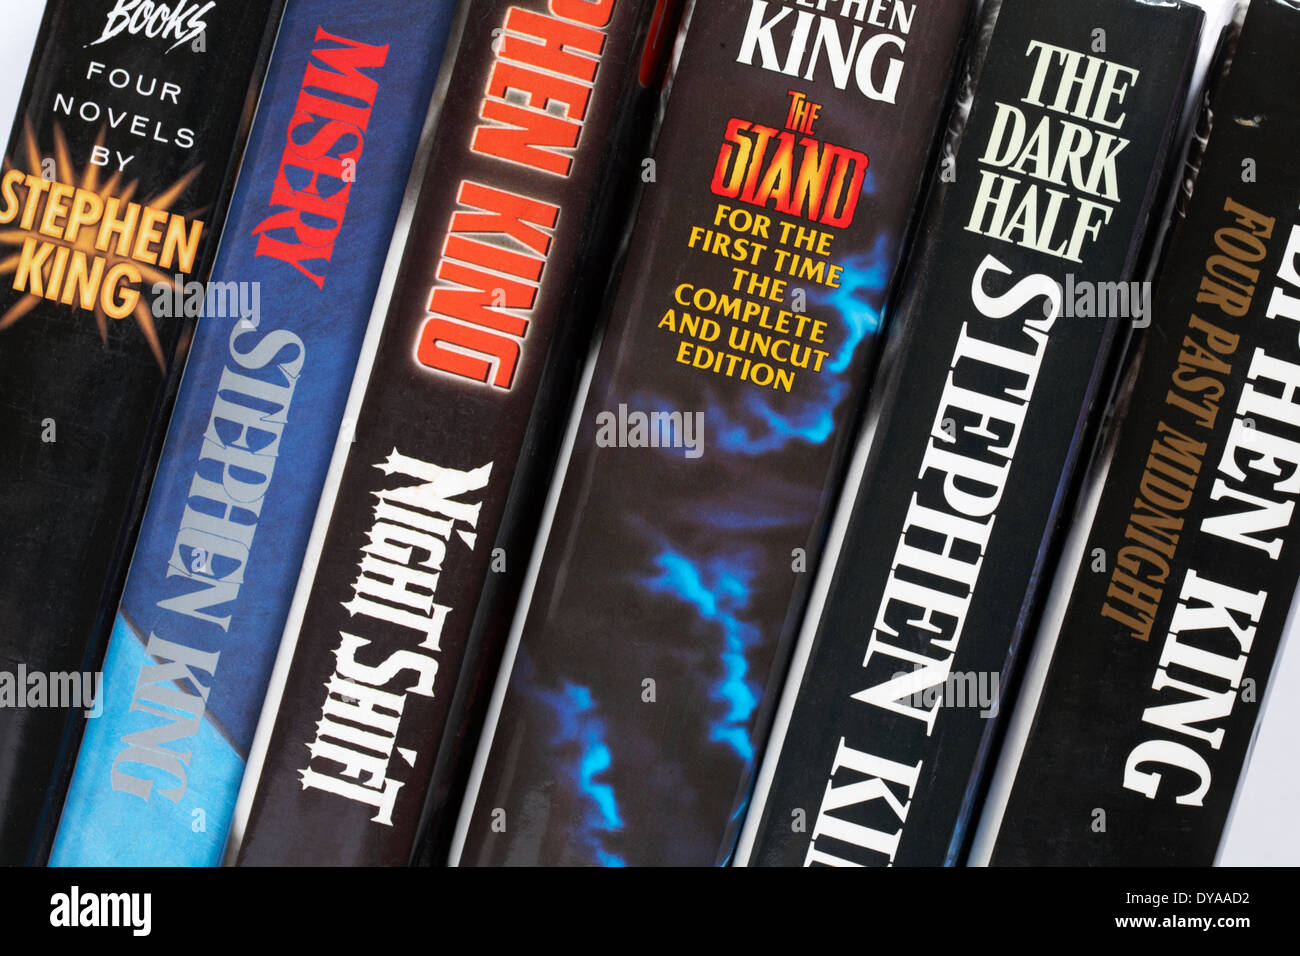 Reihe von Stephen King Bücher einschließlich Vier nach Mitternacht, die dunkle Hälfte, den Standplatz, Nachtschicht, Elend und vier Romane von Stephen King Stockfoto